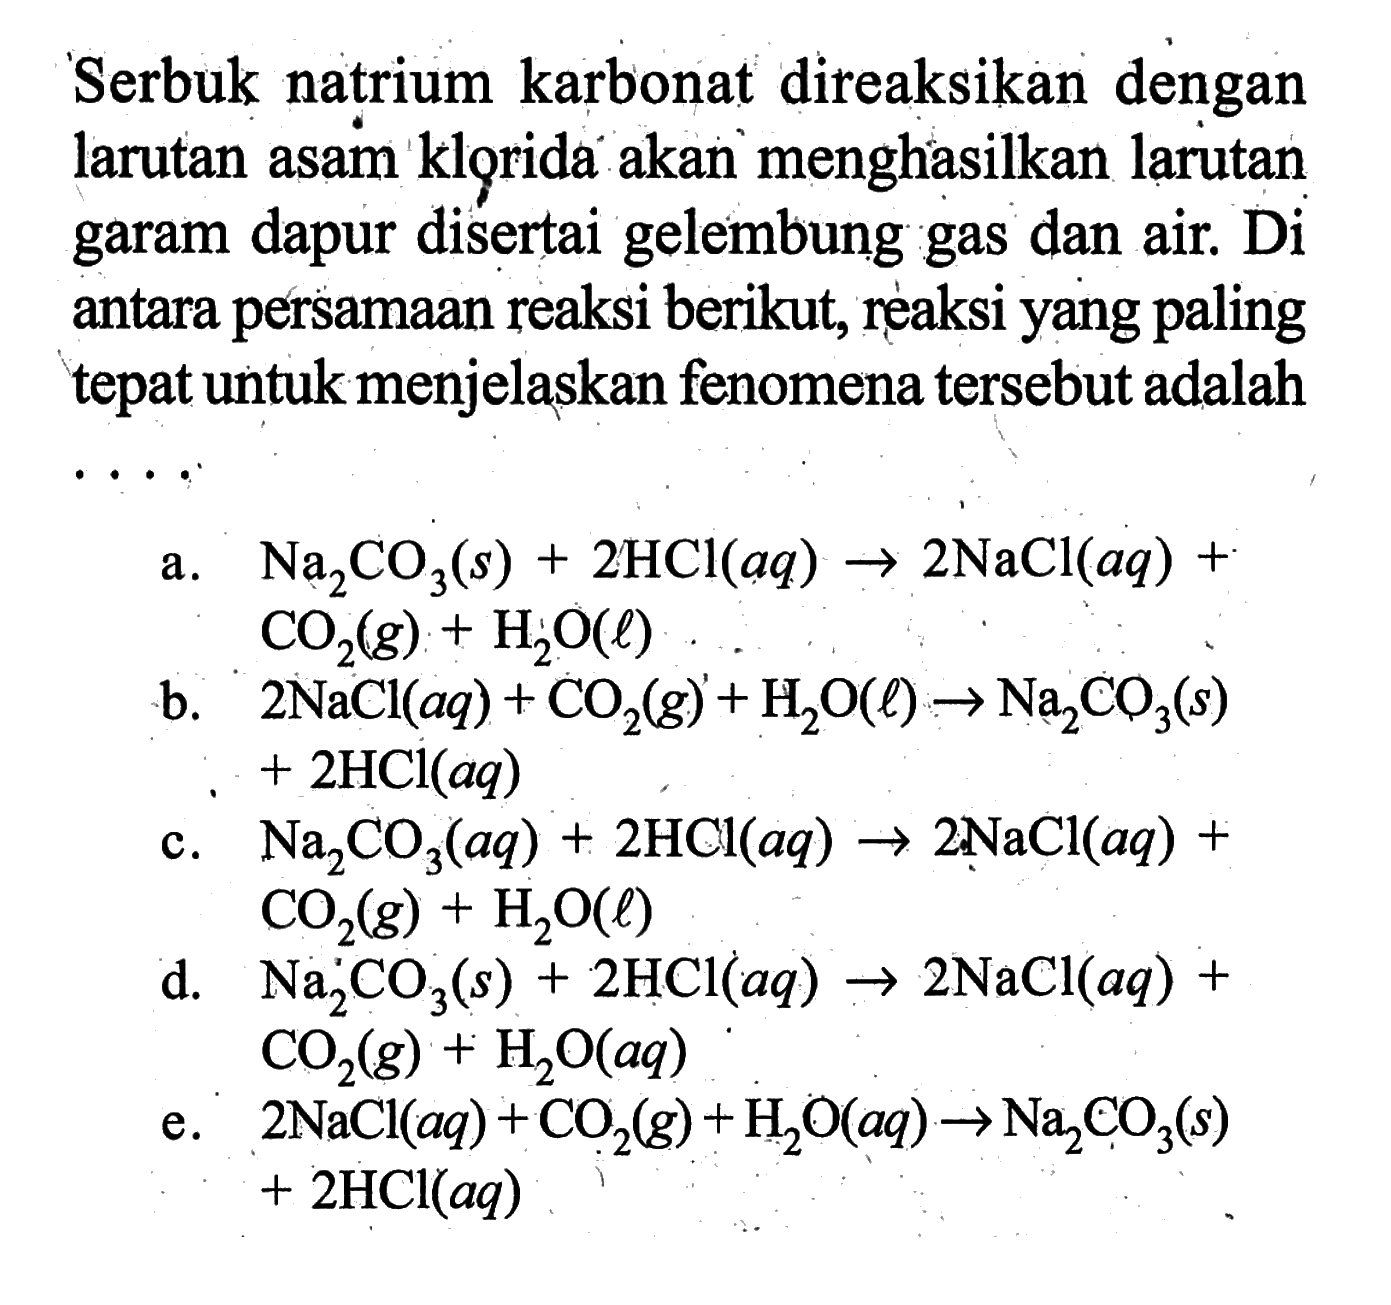 Serbuk natrium karbonat direaksikan dengan larutan asam klorida akan menghasilkan larutan garam dapur disertai gelembung gas dan air. Di antara persamaan reaksi berikut, reaksi yang paling tepat untuk menjelaskan fenomena tersebut adalah  ... 
a.  Na2CO3(s)+2HCl(aq) -> 2NaCl(aq)+CO2(g)+H2O(l) 
b.  2NaCl(aq)+CO2(g)+H2O(l) -> Na2CO3(s)+2HCl(aq) 
c.  Na2CO3(aq)+2HCl(aq) -> 2NaCl(aq)+CO2(g)+H2O(l) 
d.  Na2CO3(s)+2HCl(aq) -> 2NaCl(aq)+CO2(g)+H2O(aq) 
e.  2NaCl(aq)+CO2(g)+H2O(aq) -> Na2CO3(s)+2HCl(aq) 